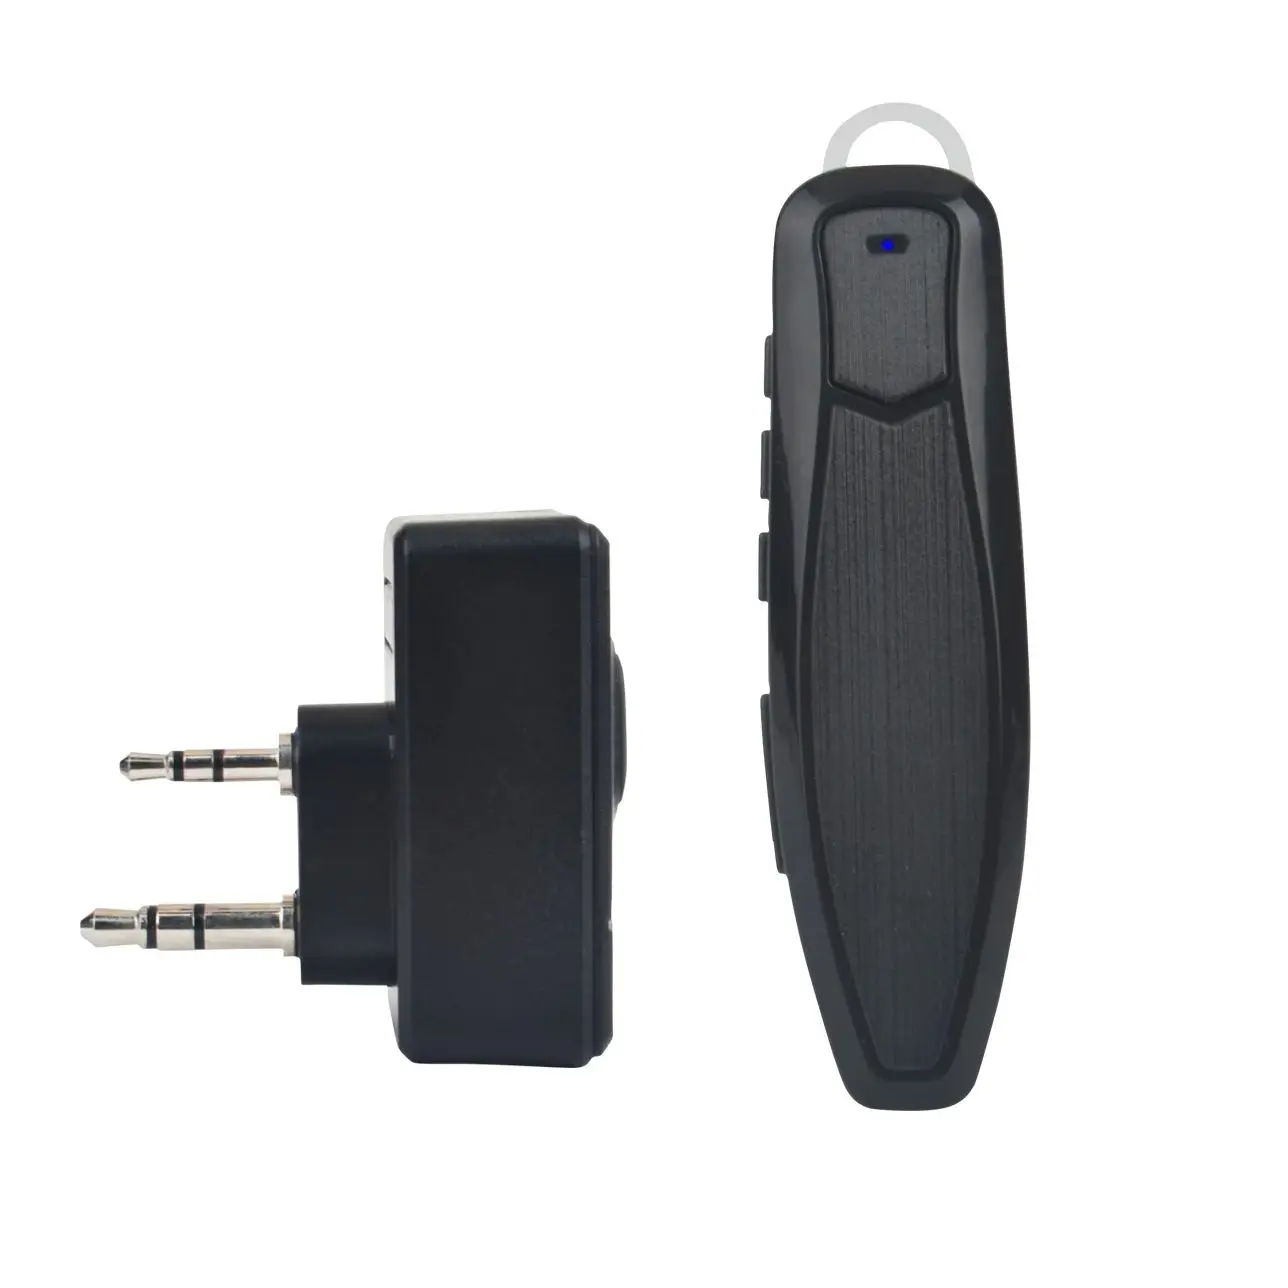 

Walkie Talkie Wireless Bluetooth PTT Headset Earpiece Hands-free K Plug For KENWOOD Microphone headset Adapter Baofeng UV-5R